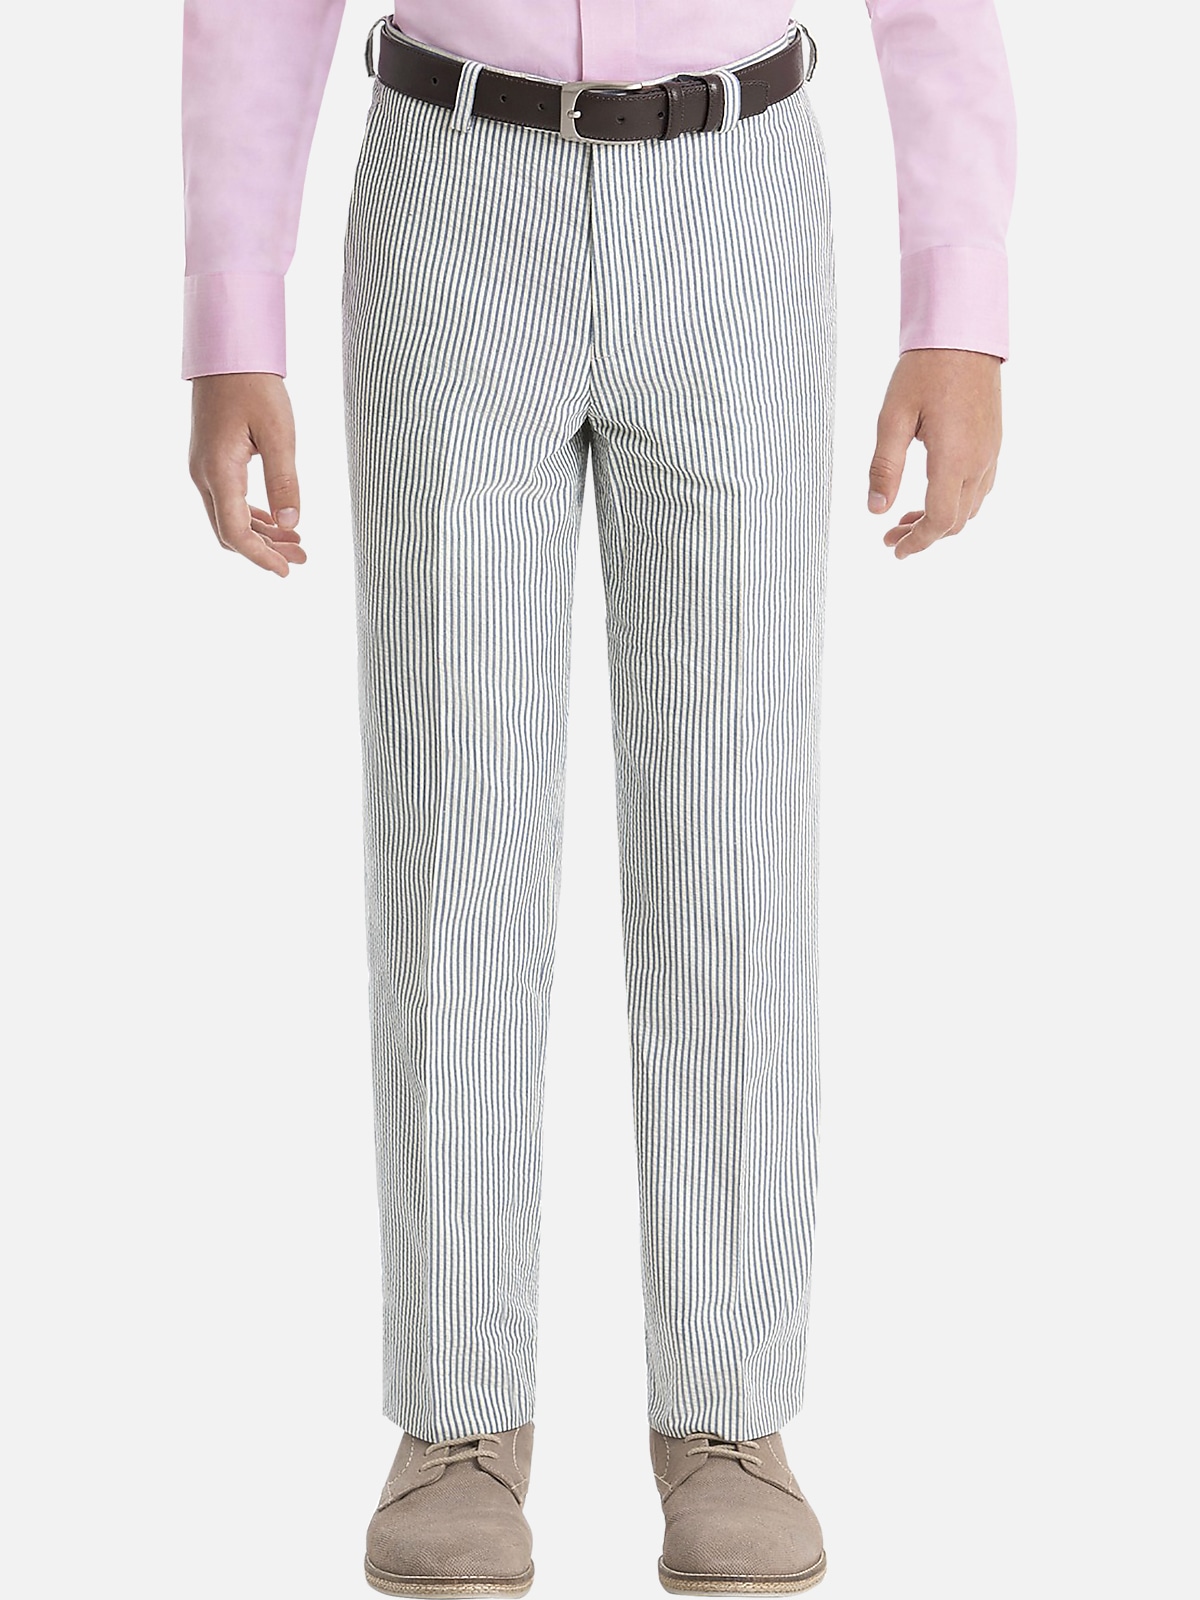 Lauren By Ralph Lauren Boys (Size 8-20) Suit Separates Pants | All ...